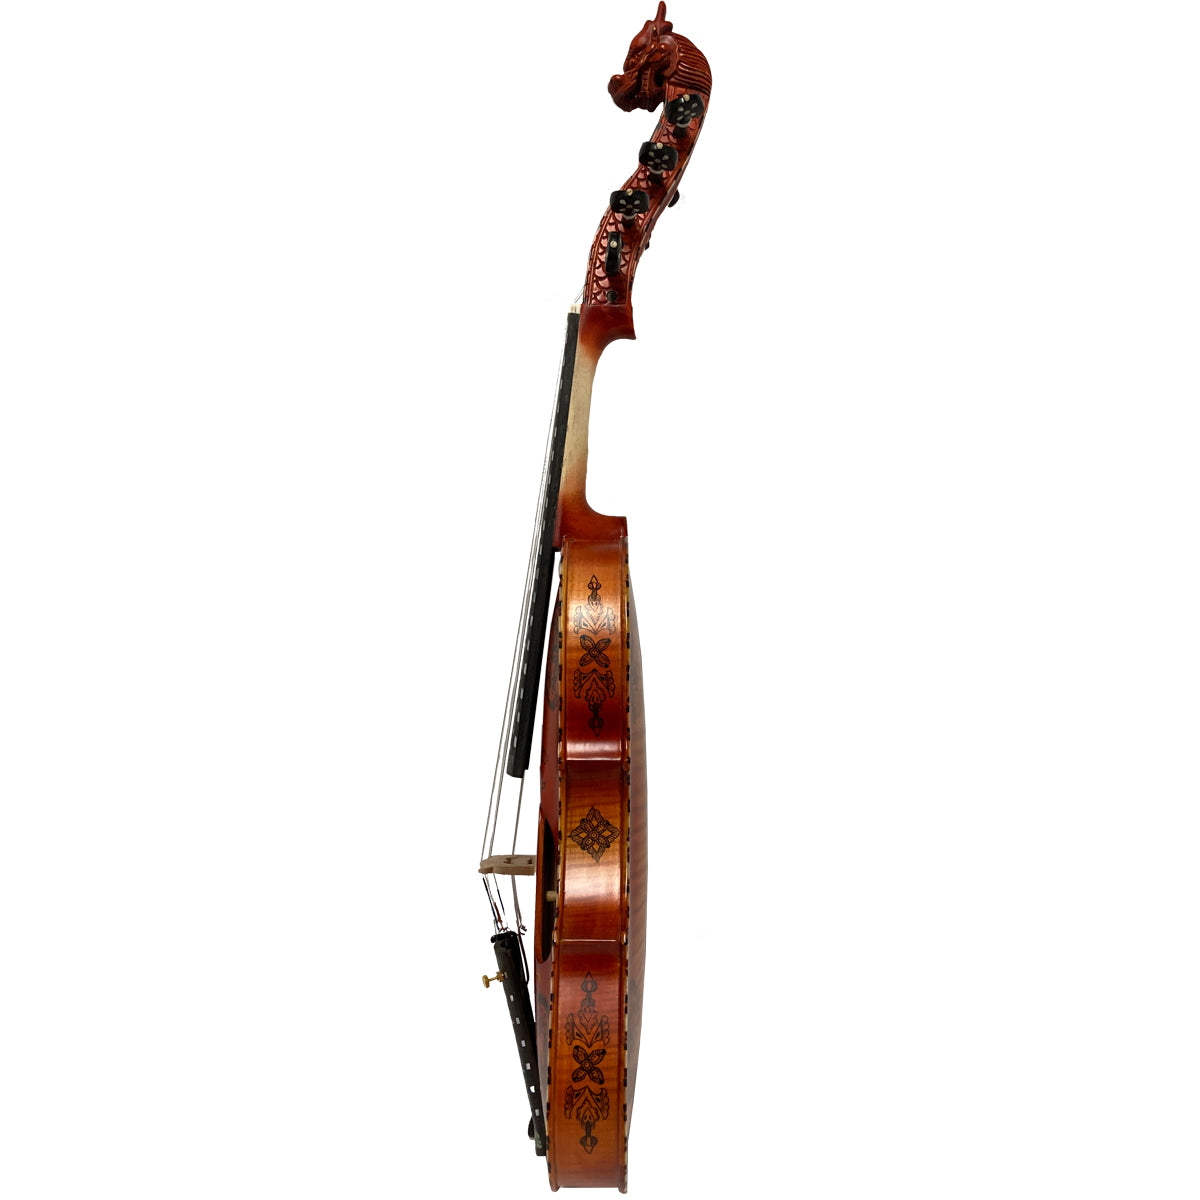 Deluxe Fancy Norwegian Hardanger Fiddle Fiddles Lark in the Morning   